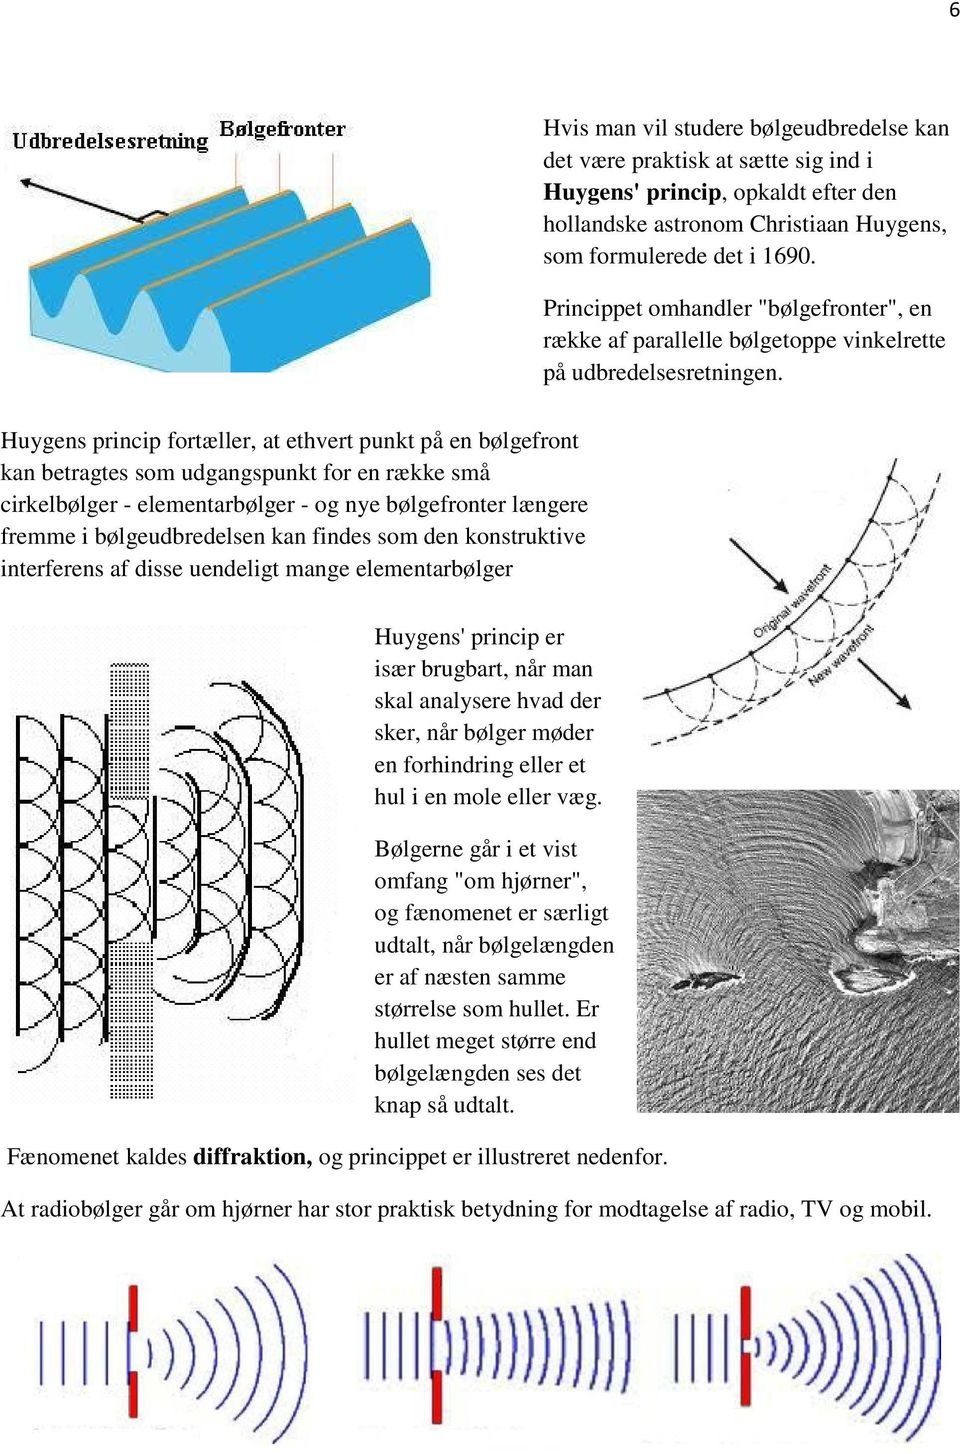 Huygens princip fortæller, at ethvert punkt på en bølgefront kan betragtes som udgangspunkt for en række små cirkelbølger - elementarbølger - og nye bølgefronter længere fremme i bølgeudbredelsen kan